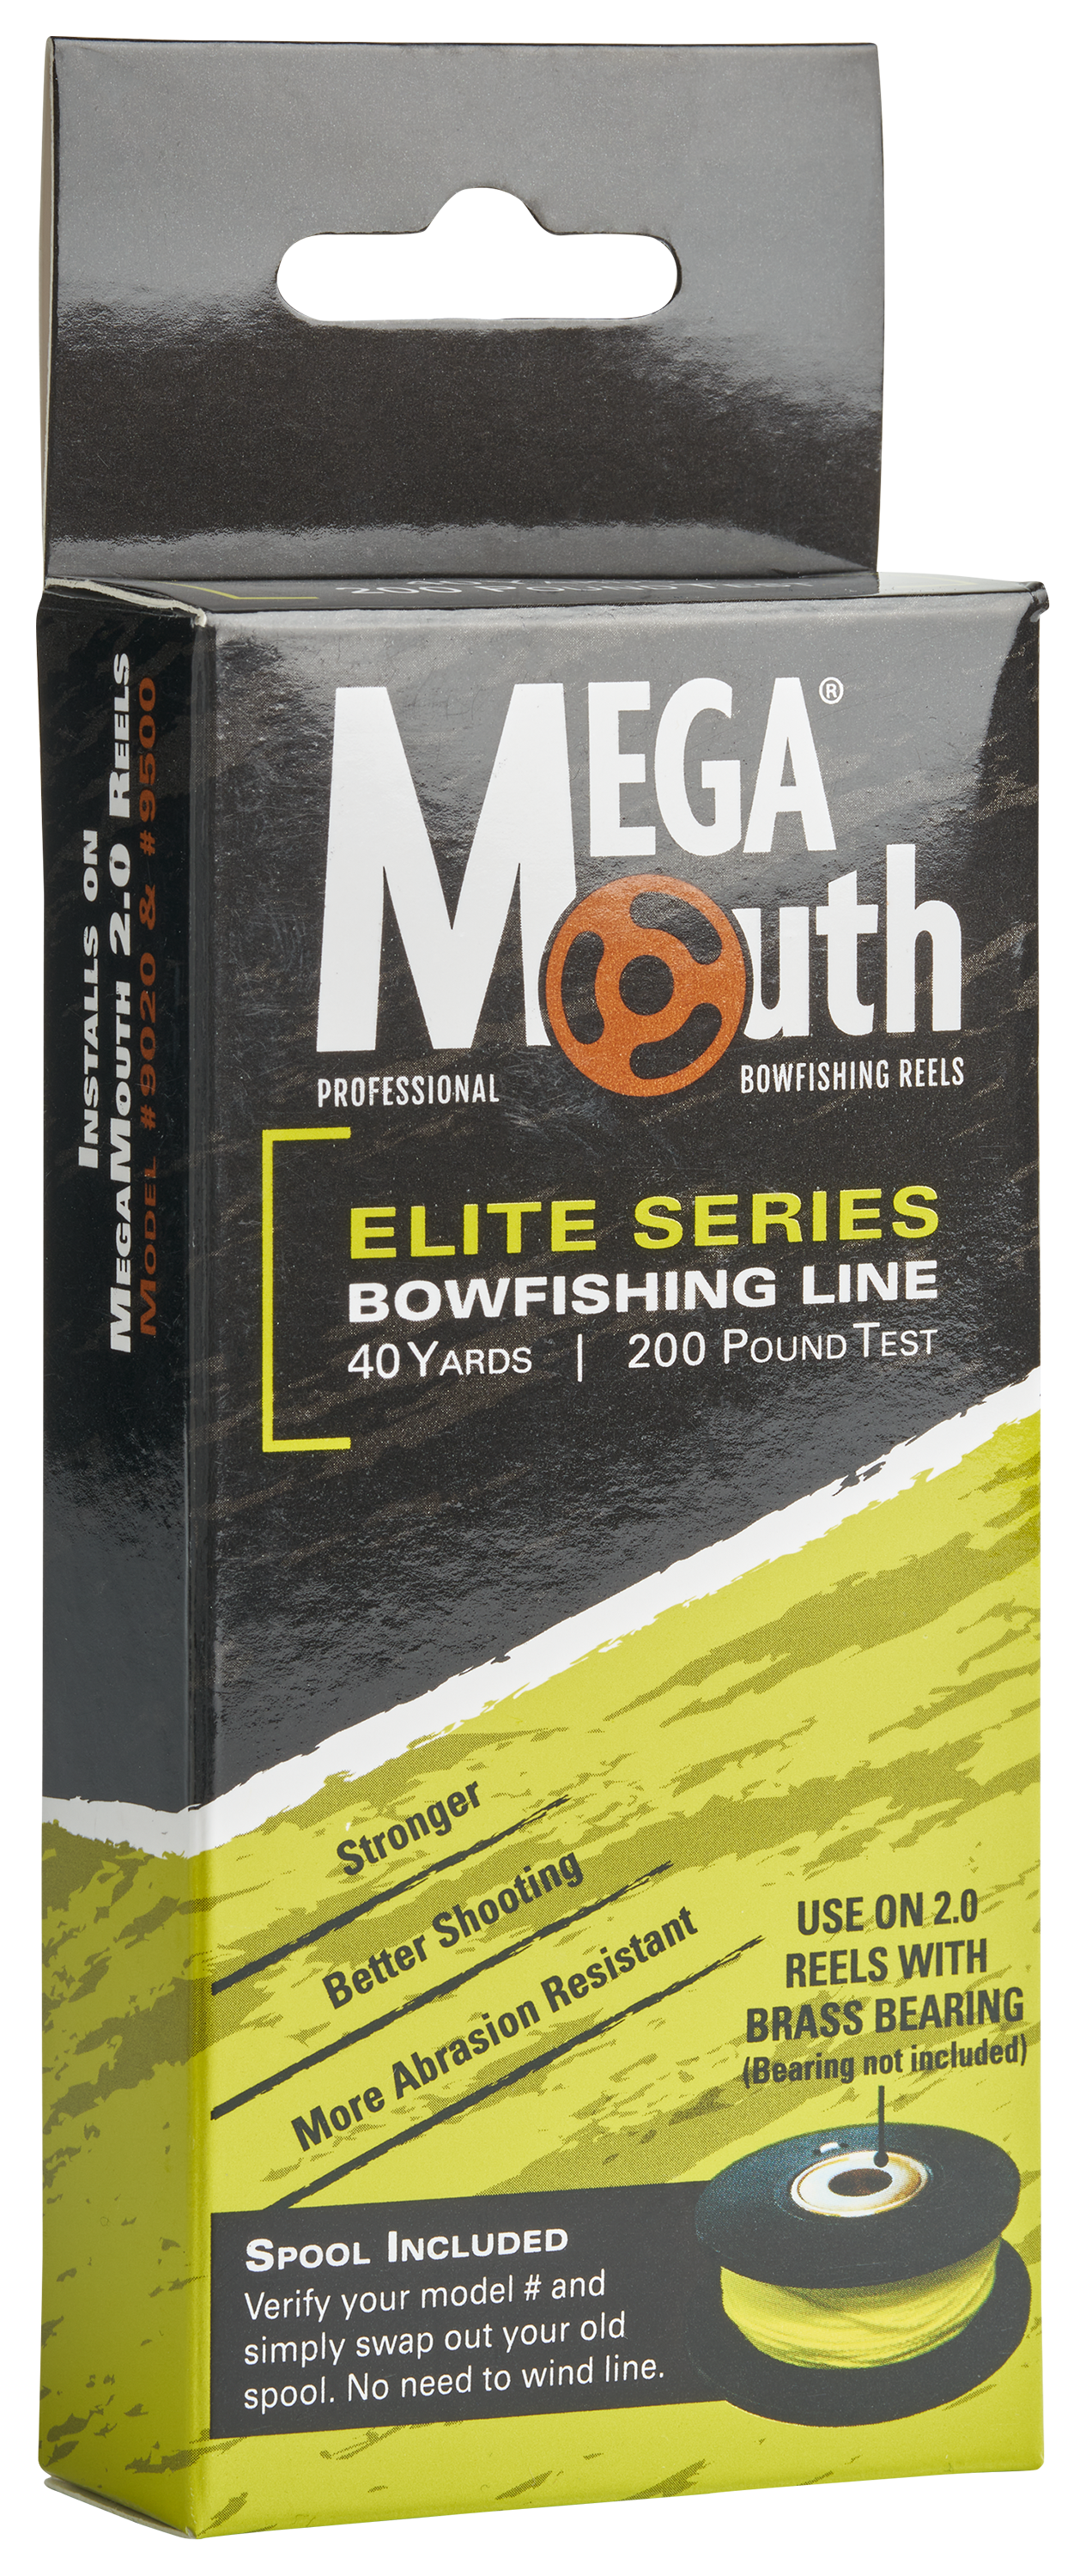 AMSBowfishing Megamouth V2.0 Elite Series Bowfishing Line and Spool